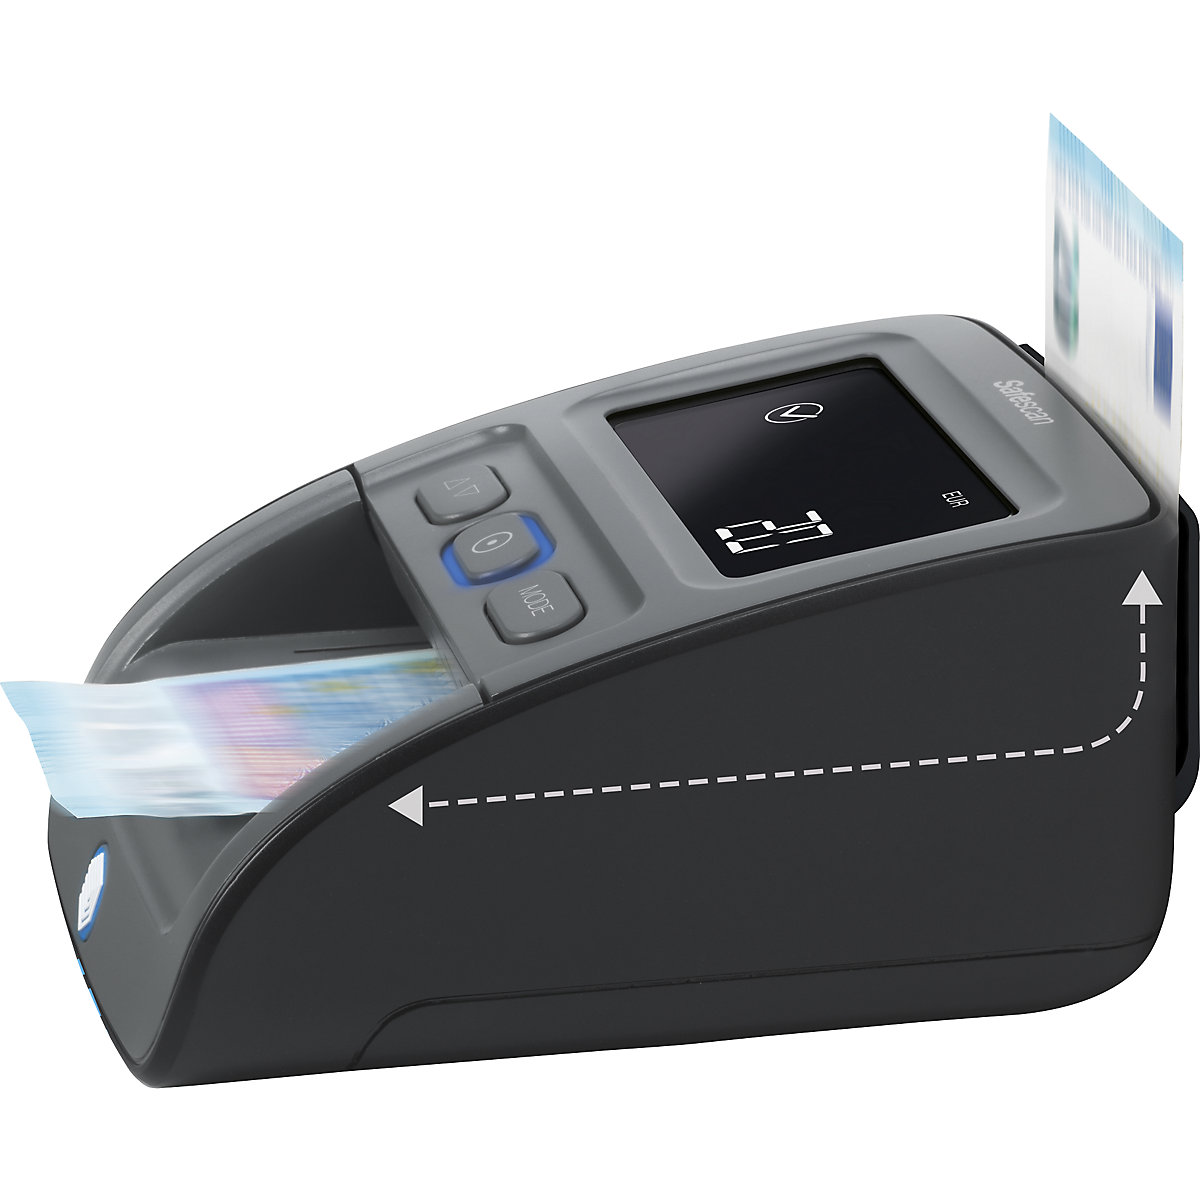 Detector de billetes falsos – Safescan (Imagen del producto 17)-16